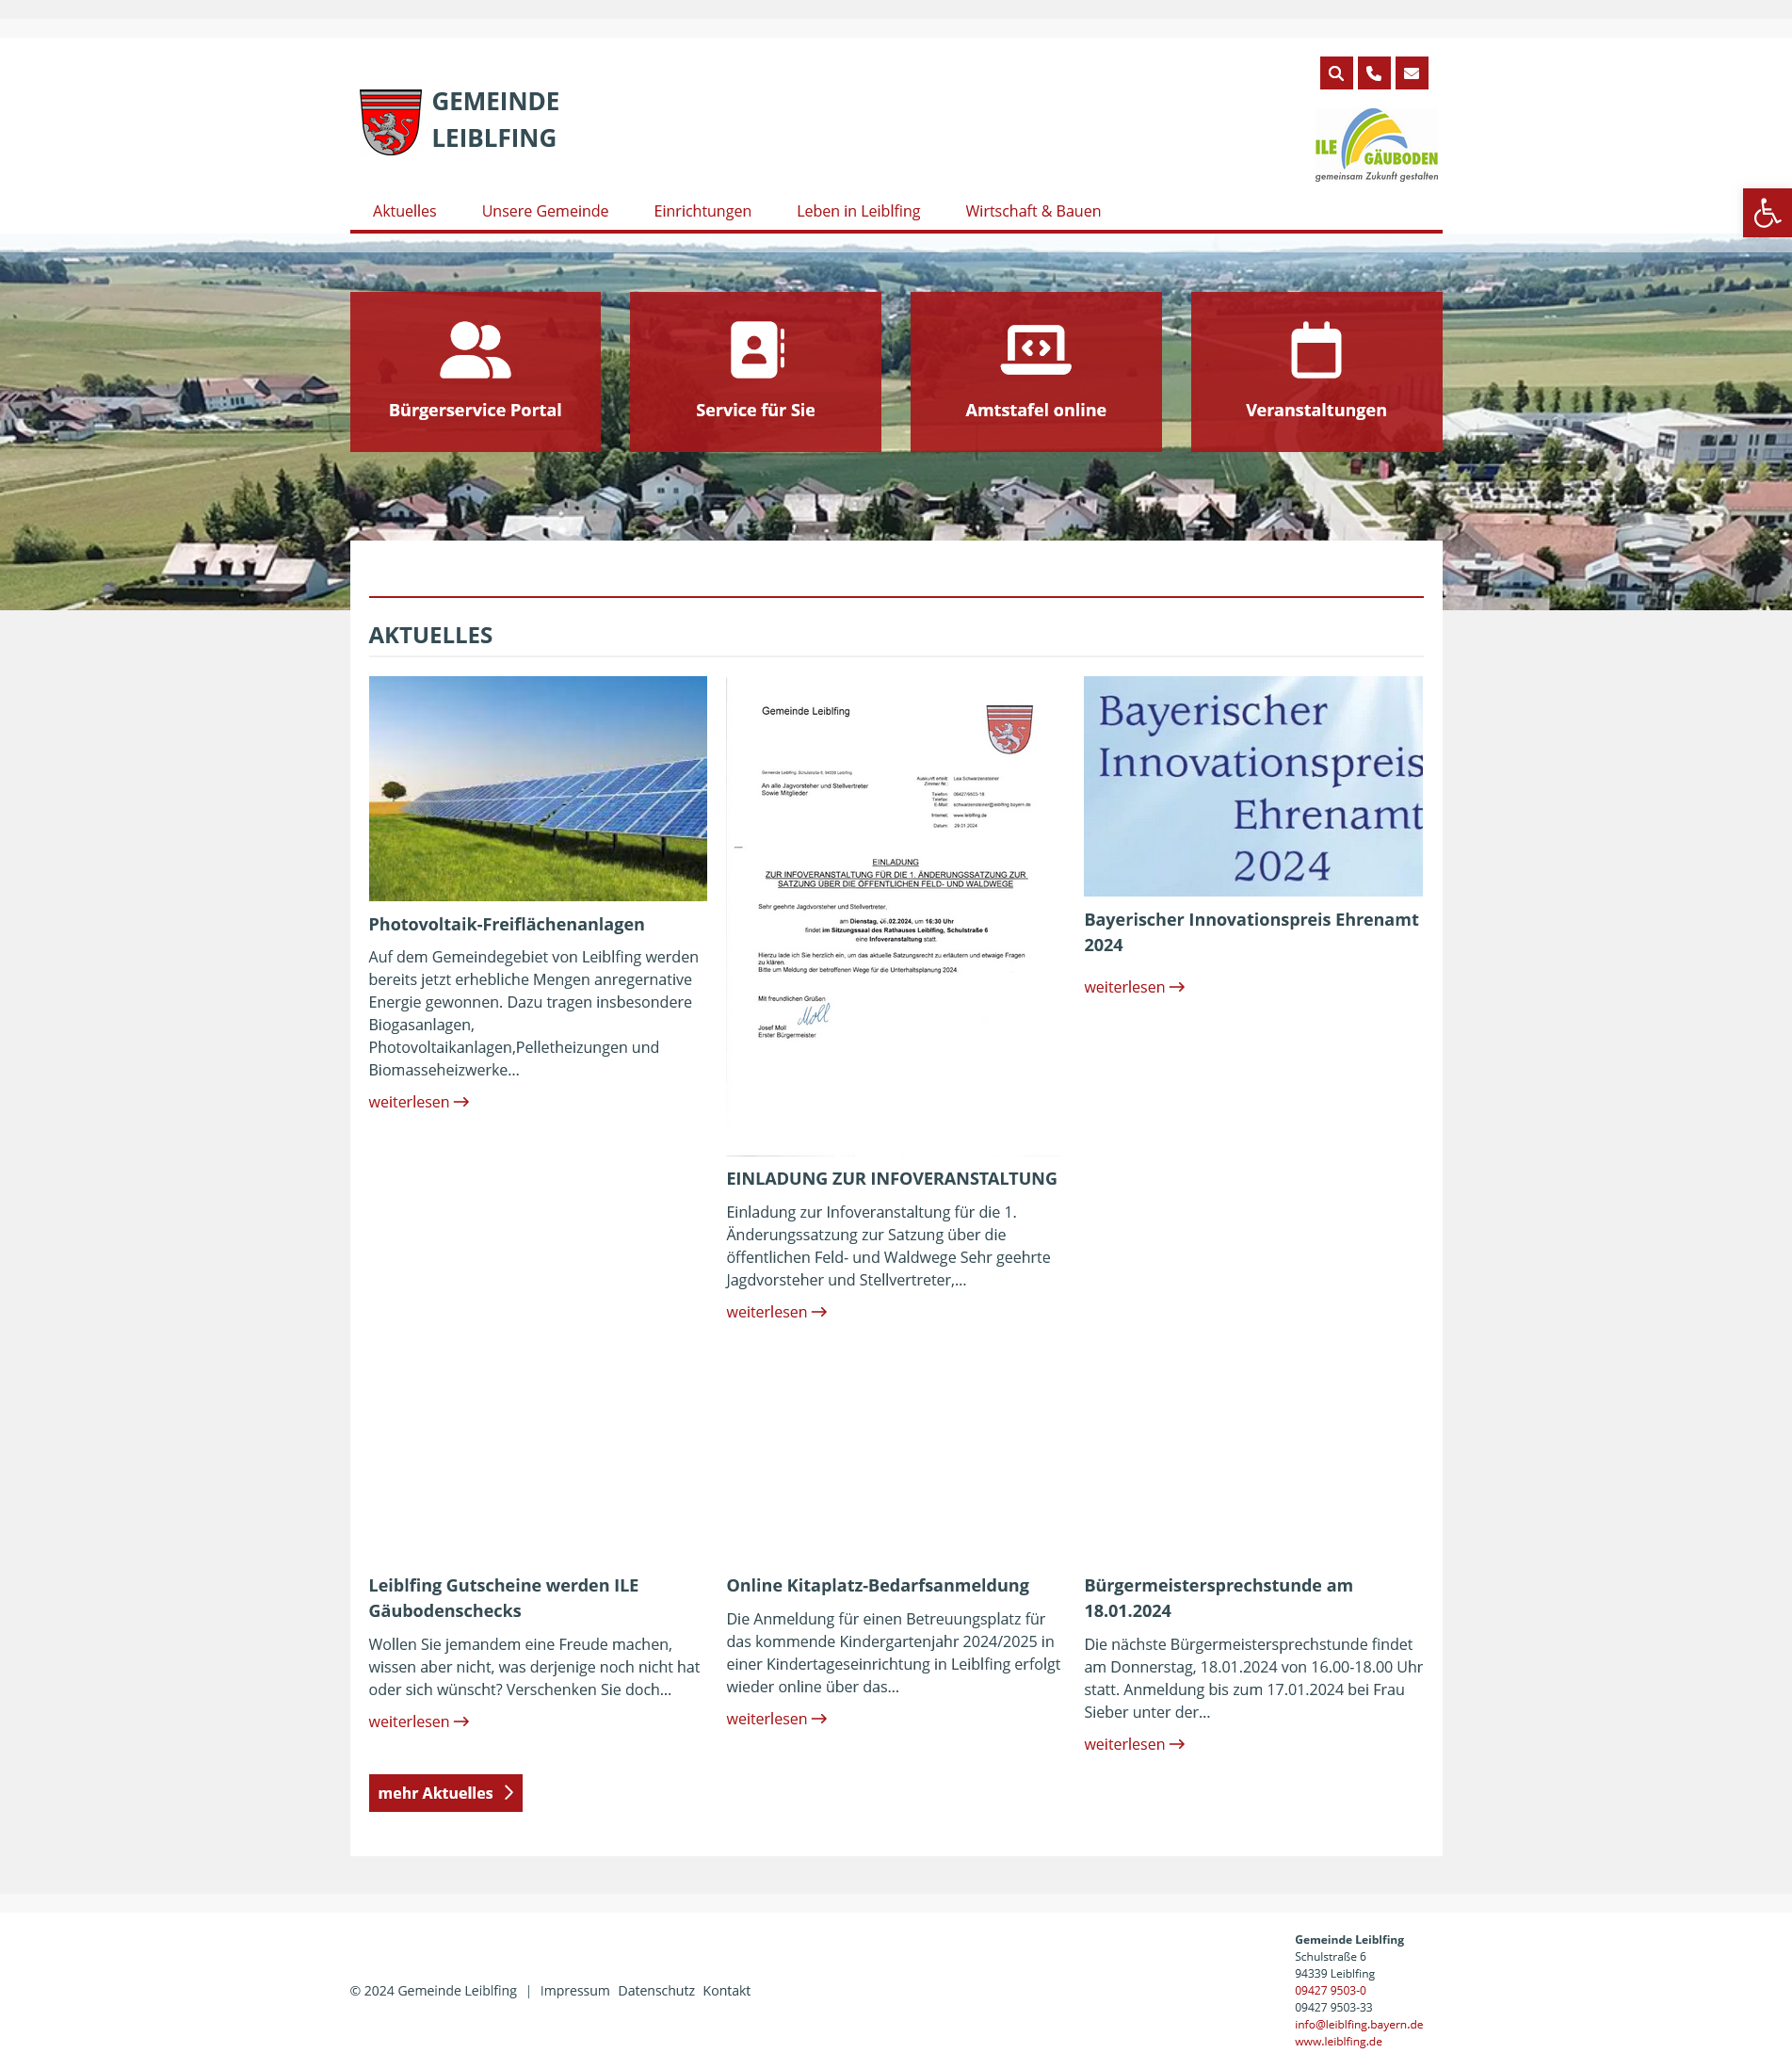 Websitescreenshot: Gemeinde Leibelfing